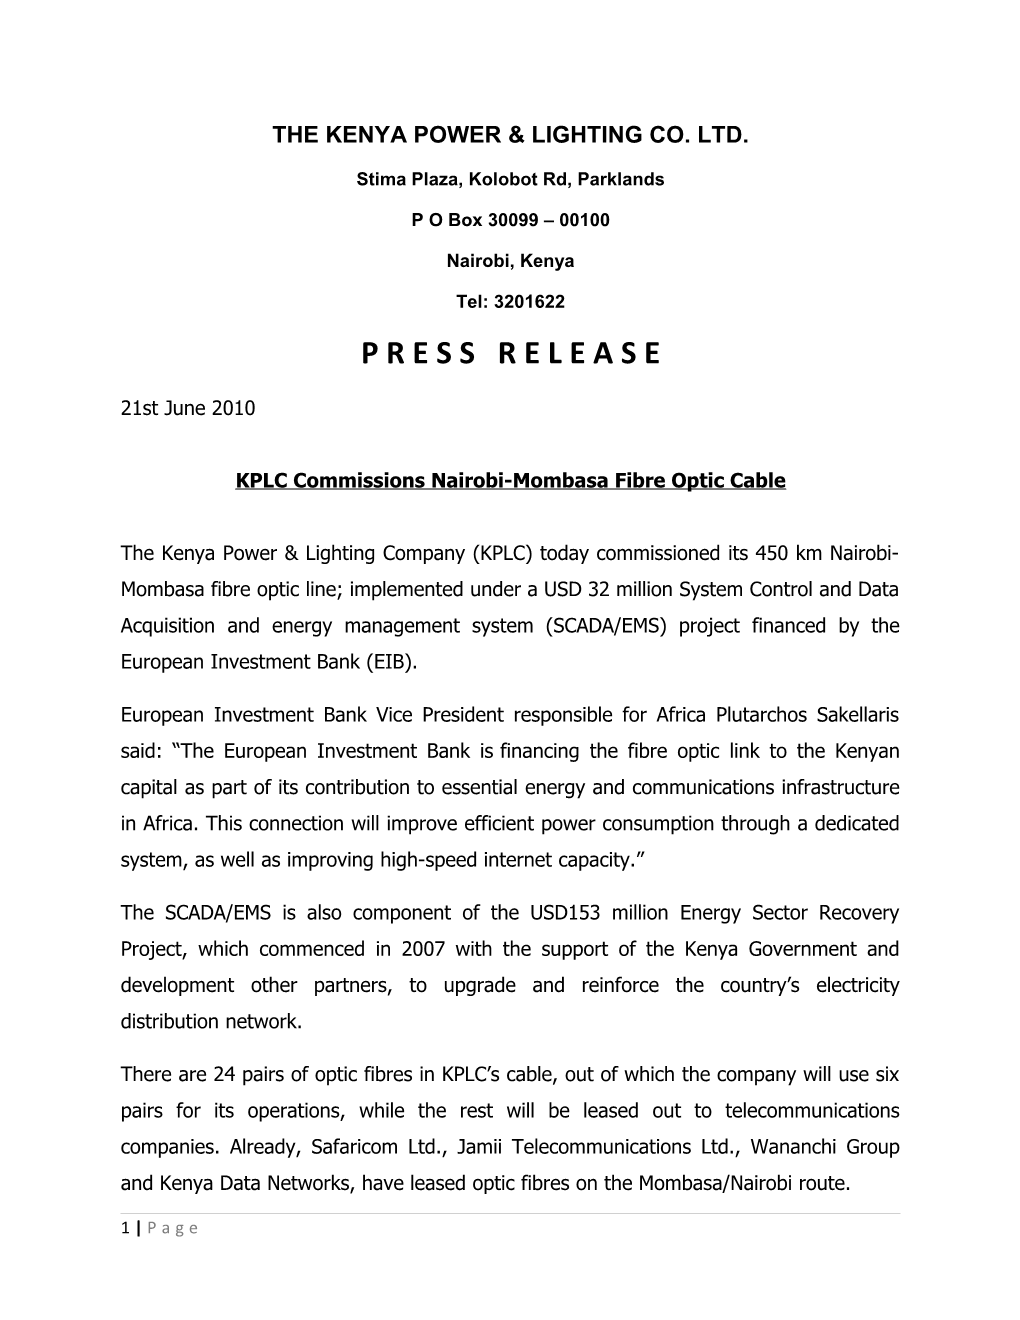 KPLC Commissions Nairobi-Mombasa Fibre Optic Cable